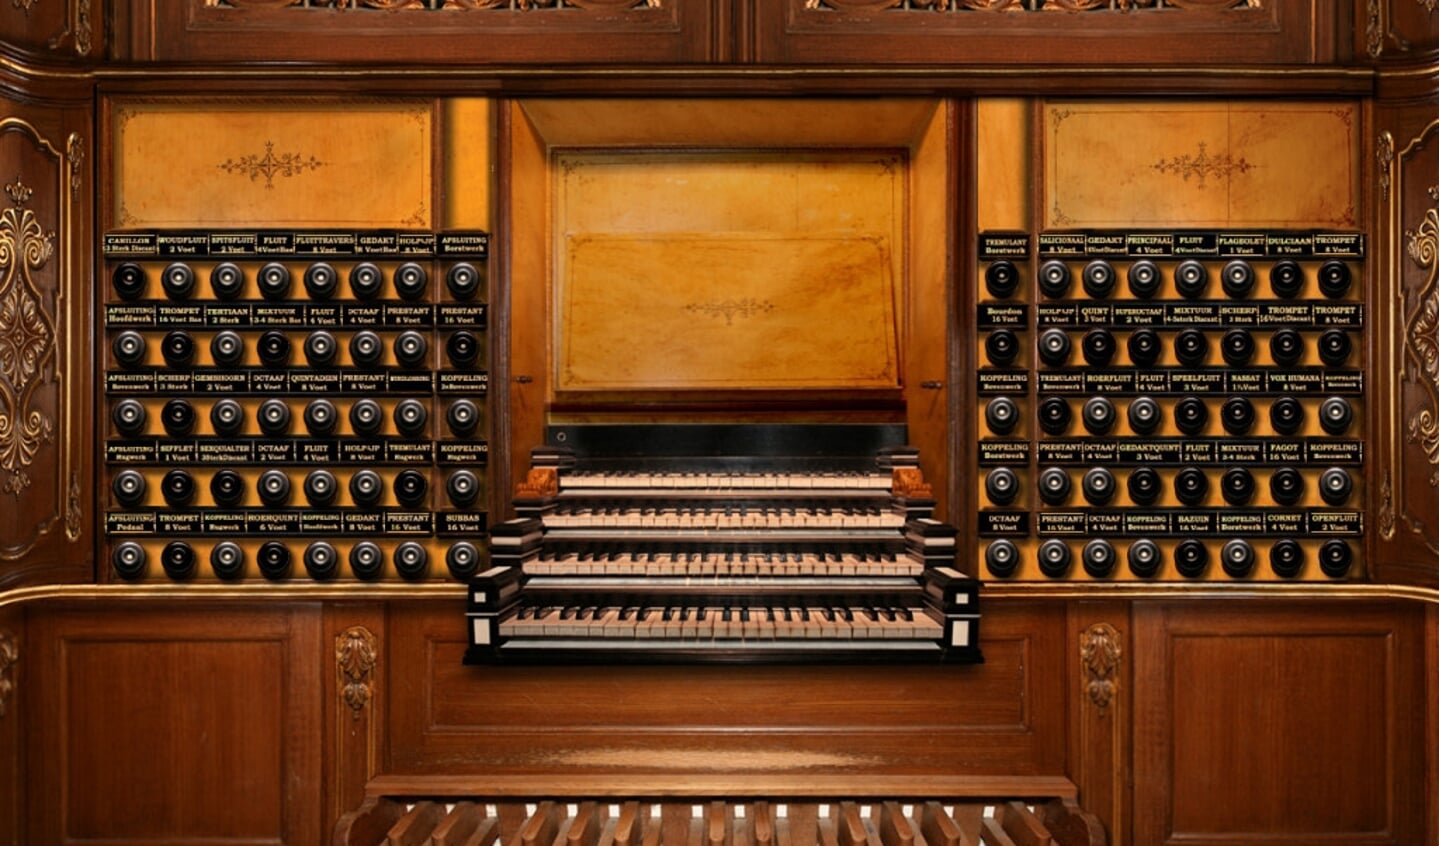 De speeltafel van het Hinsz-orgel in de Bovenkerk